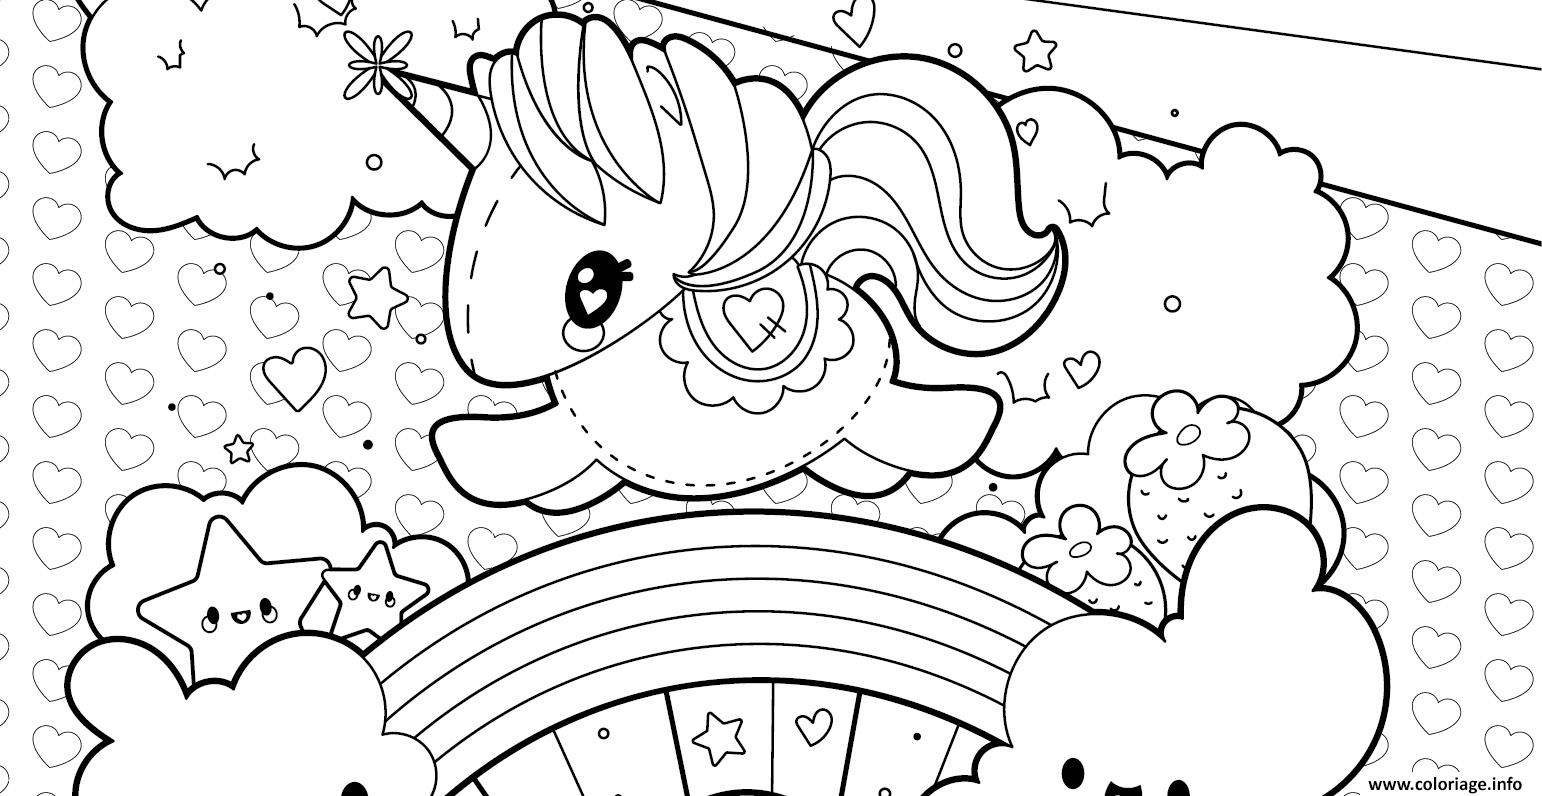 Dessin licorne arc en ciel kawaii etoiles happy unicorn par artherapie Coloriage Gratuit à Imprimer